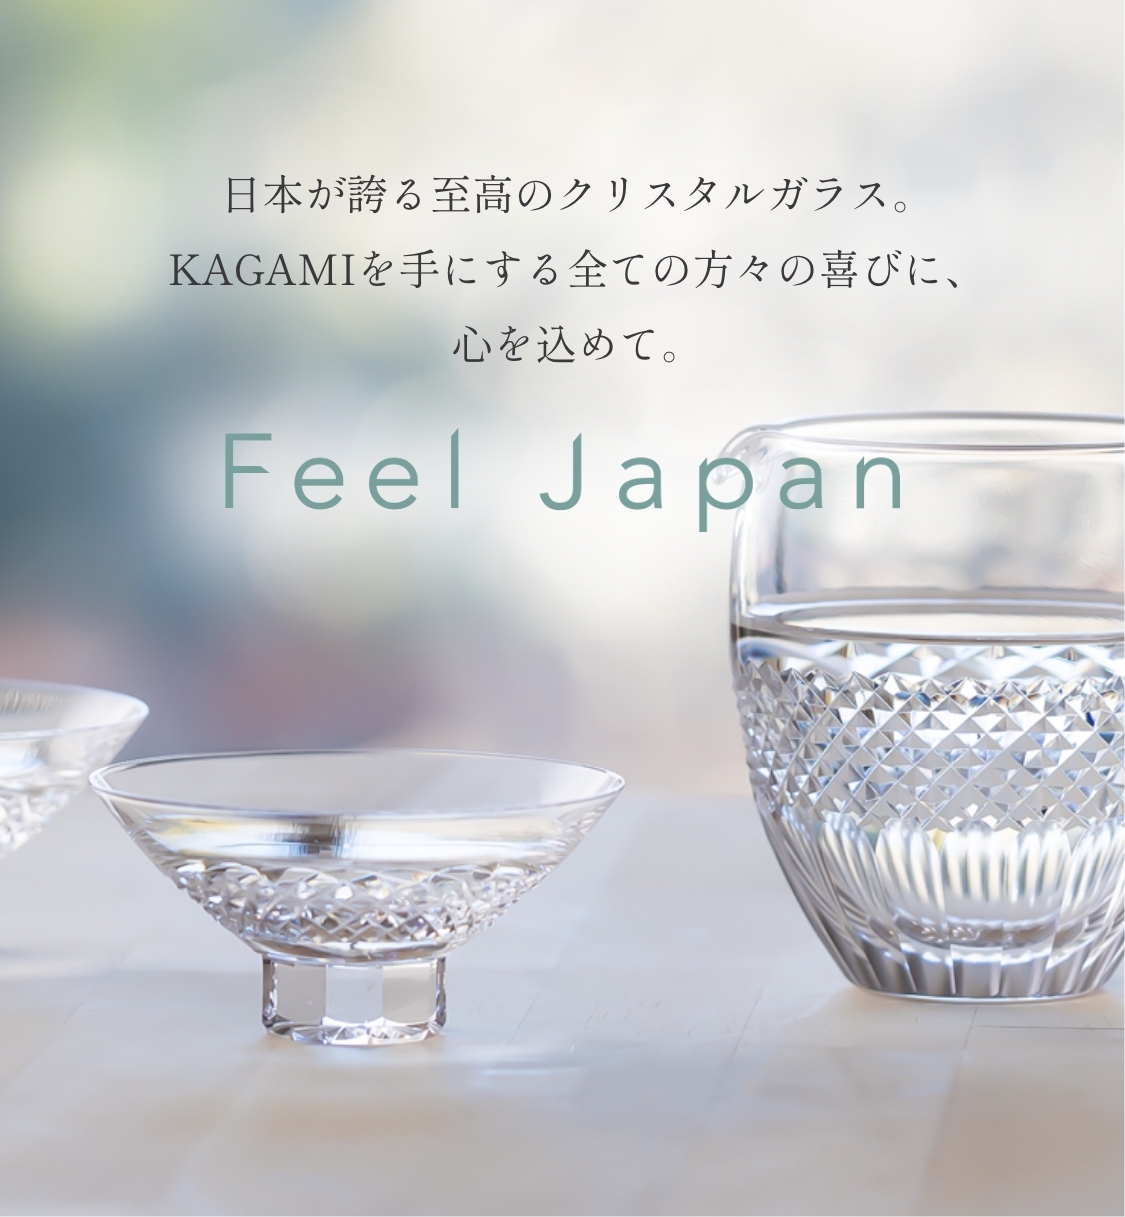 日本が誇る至高のクリスタルガラス。KAGAMIを手にする全ての方々の喜びに、心を込めて。